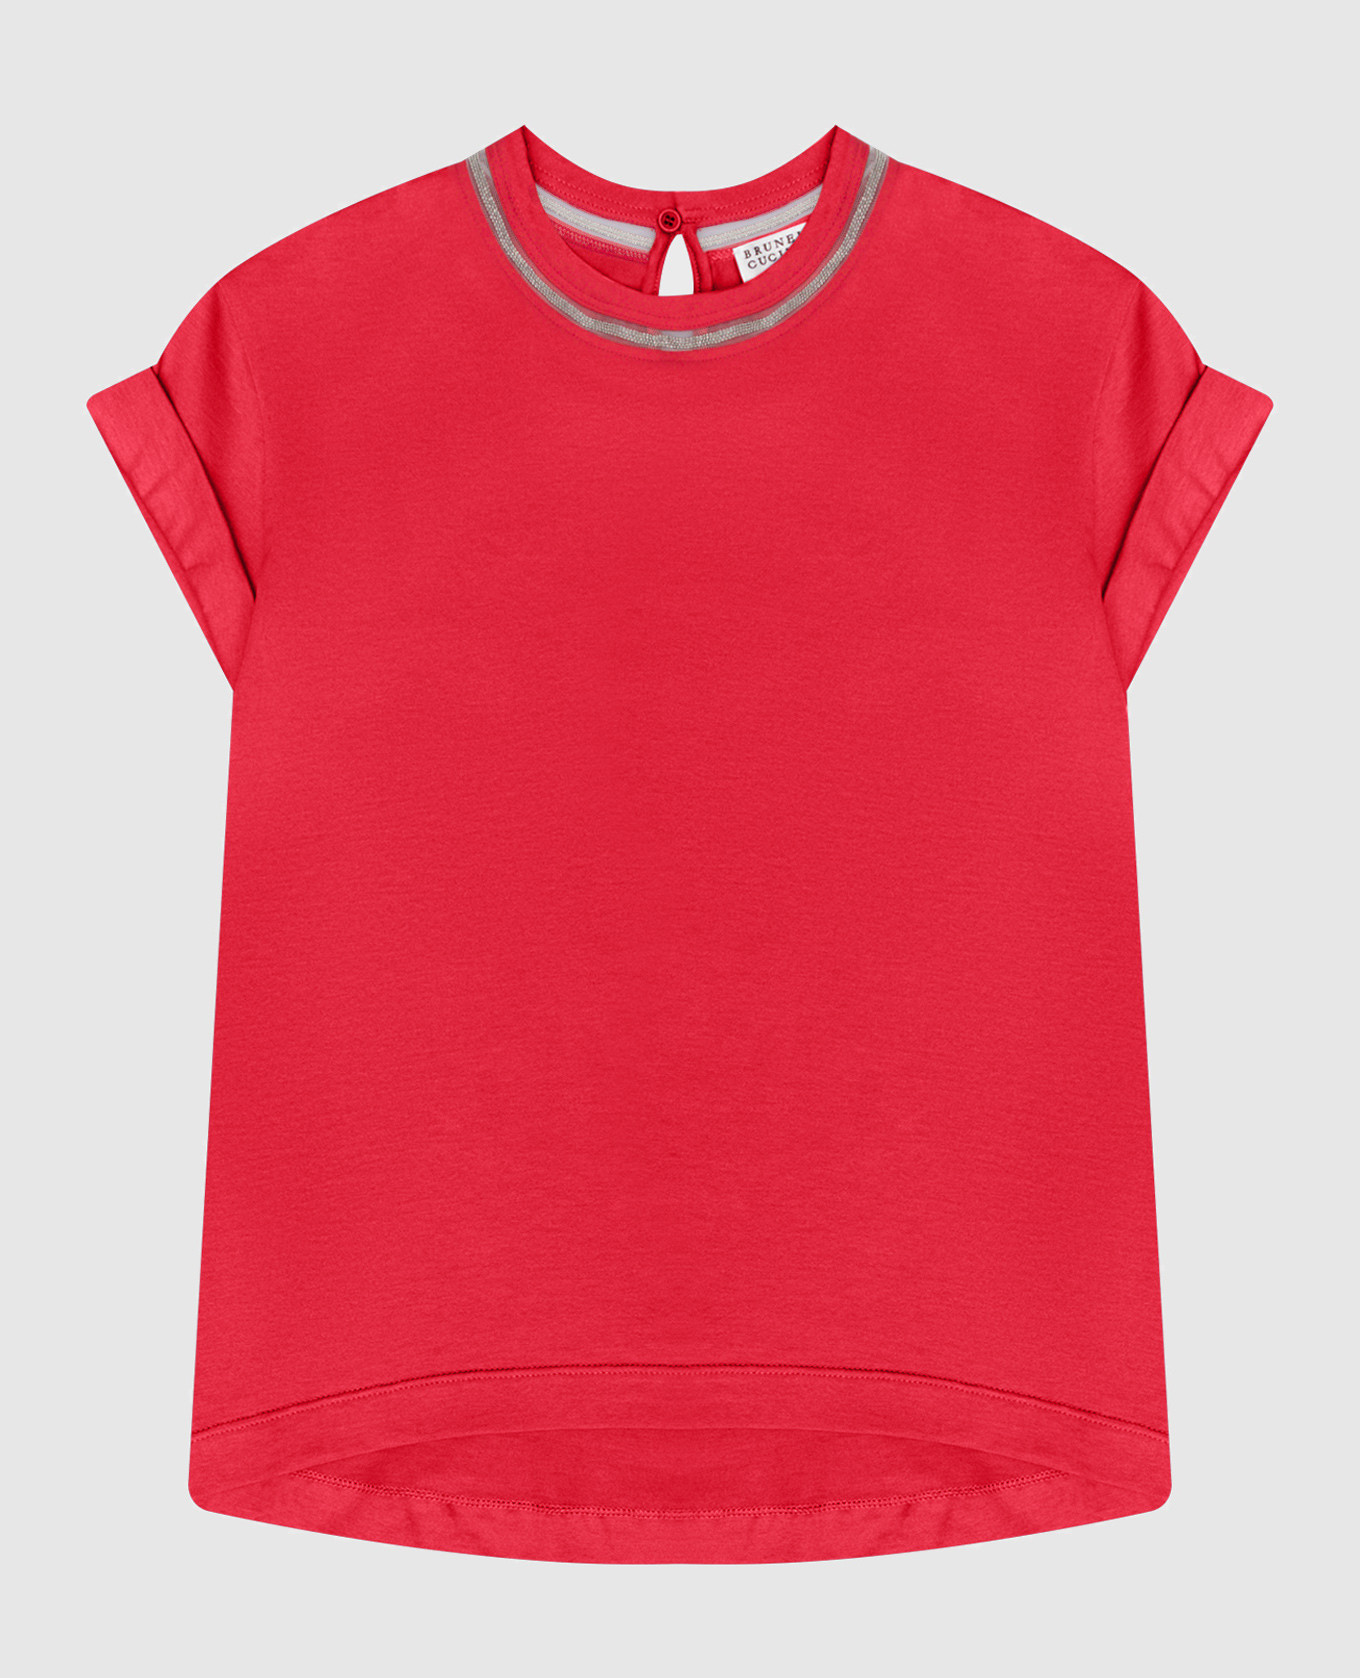 Детская красная футболка с цепочкой мониль